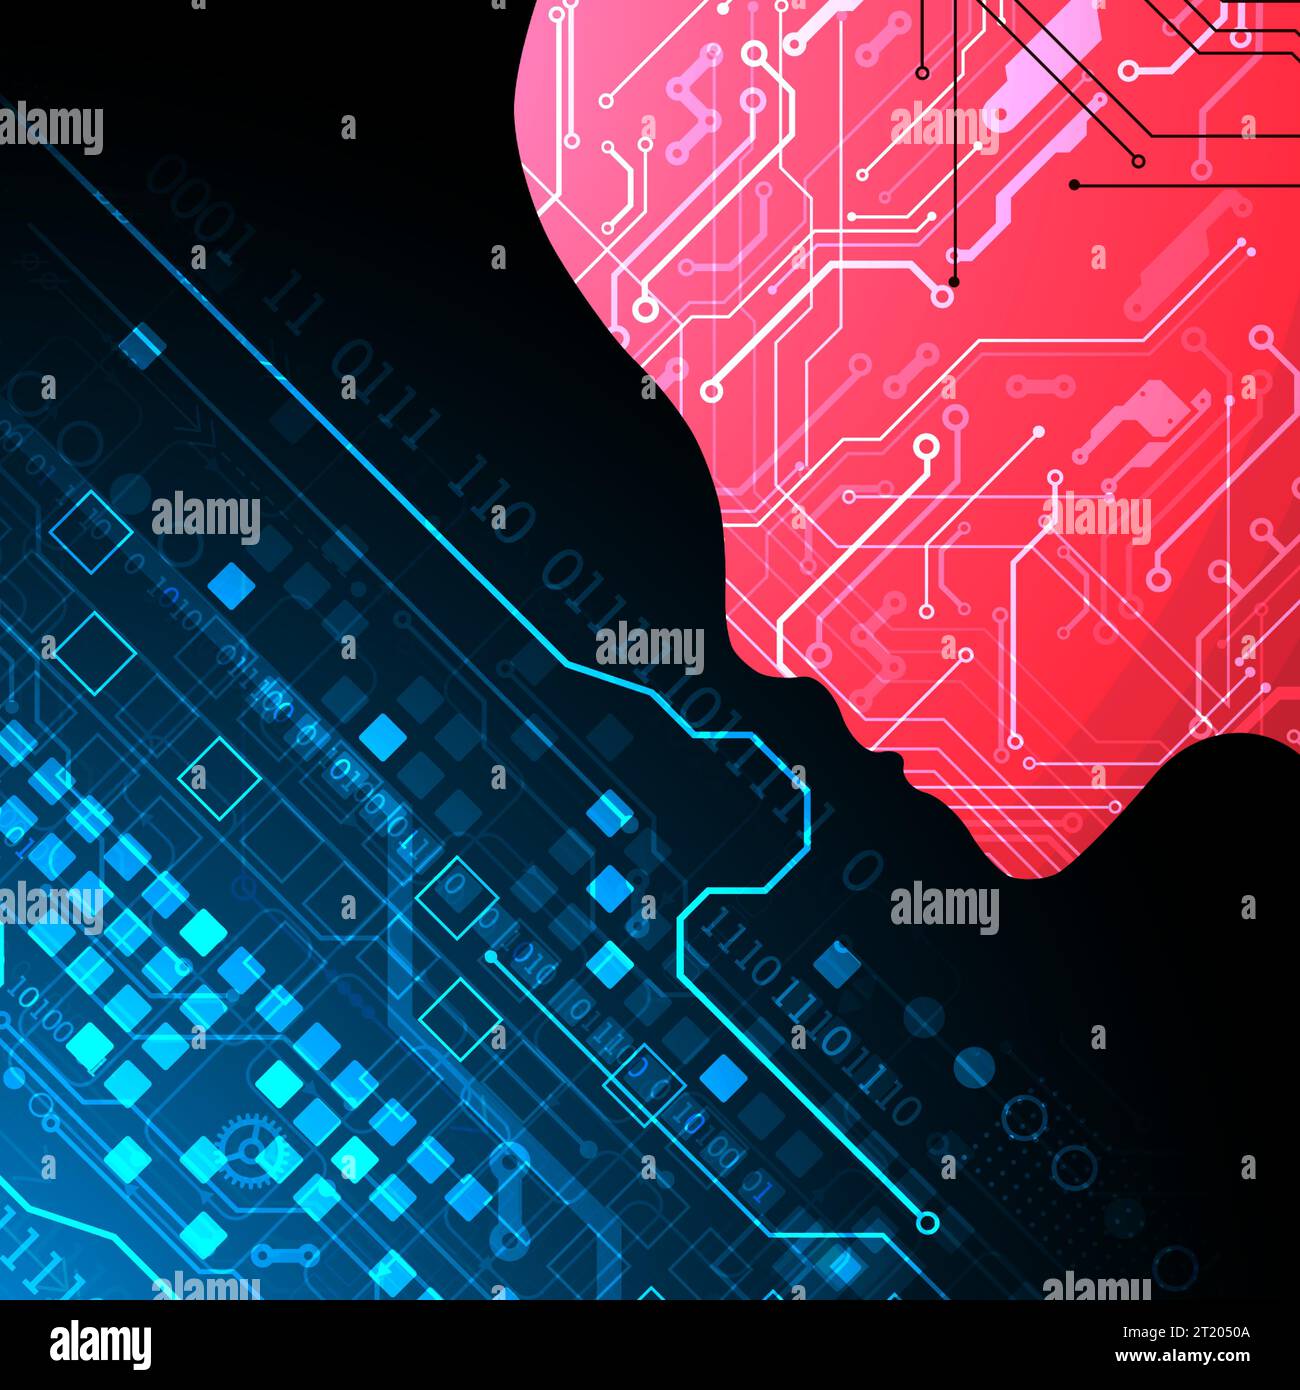 Abstrakter Hintergrund zum Thema künstliche Intelligenz. Kopf-/Gehirnform mit technologischen Elementen innerhalb der Kontur. Stock Vektor